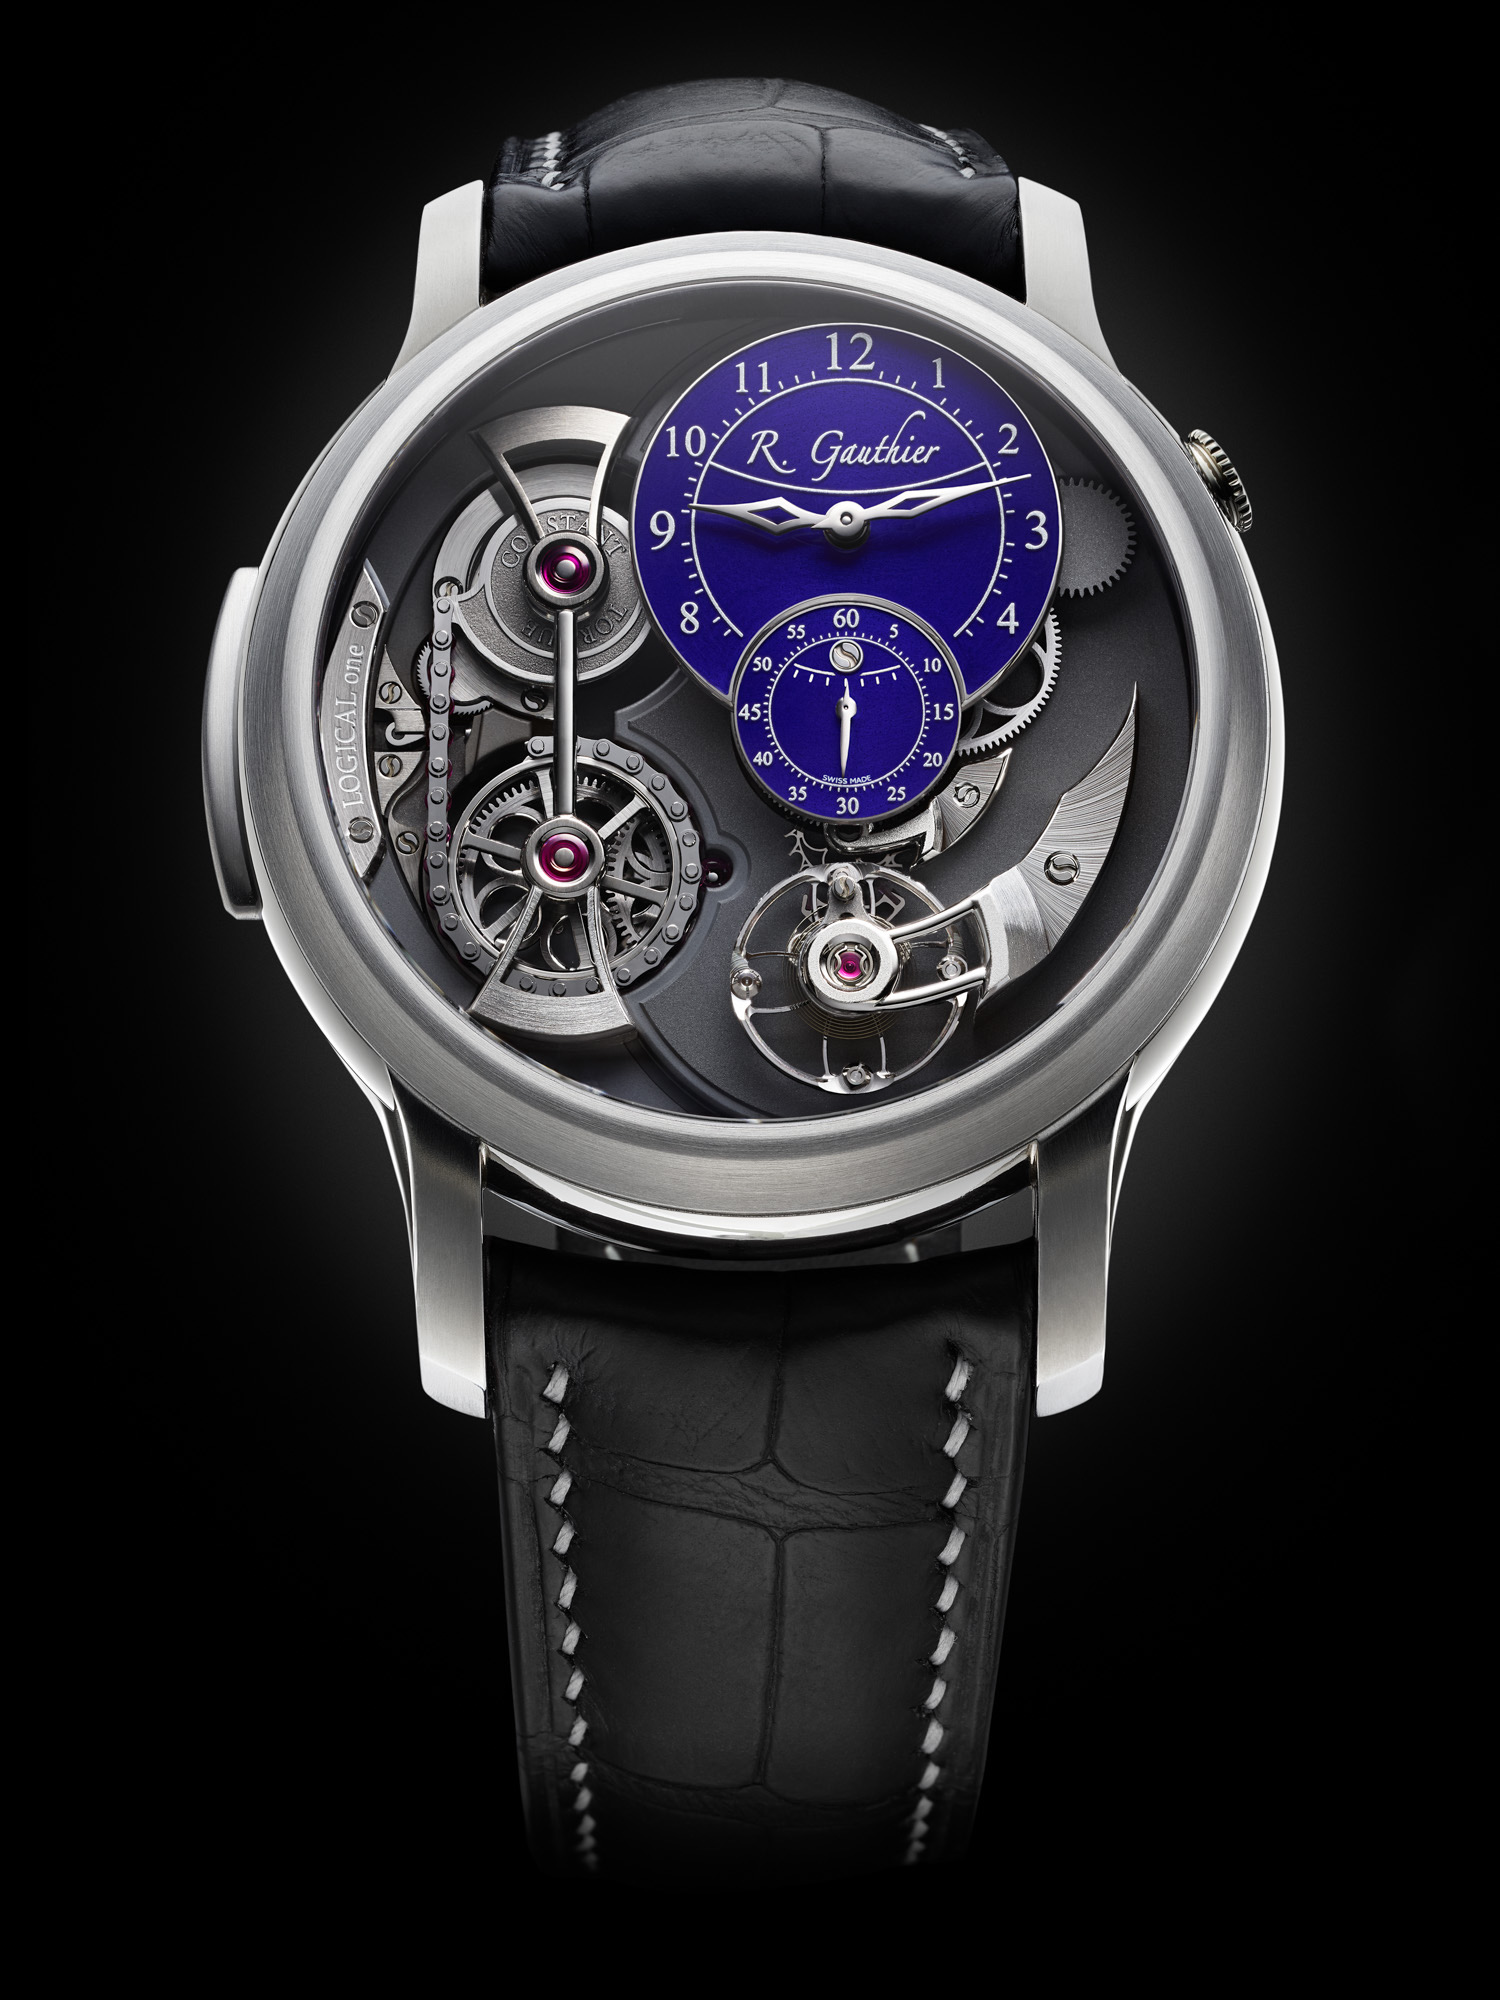 スイス高級時計ブランド「ローマン・ゴティエ」の腕時計「ロジカル・ワン」、グランフーエナメル文字盤の色の選択が可能に。｜スイスプライムブランズ株式会社のプレスリリース